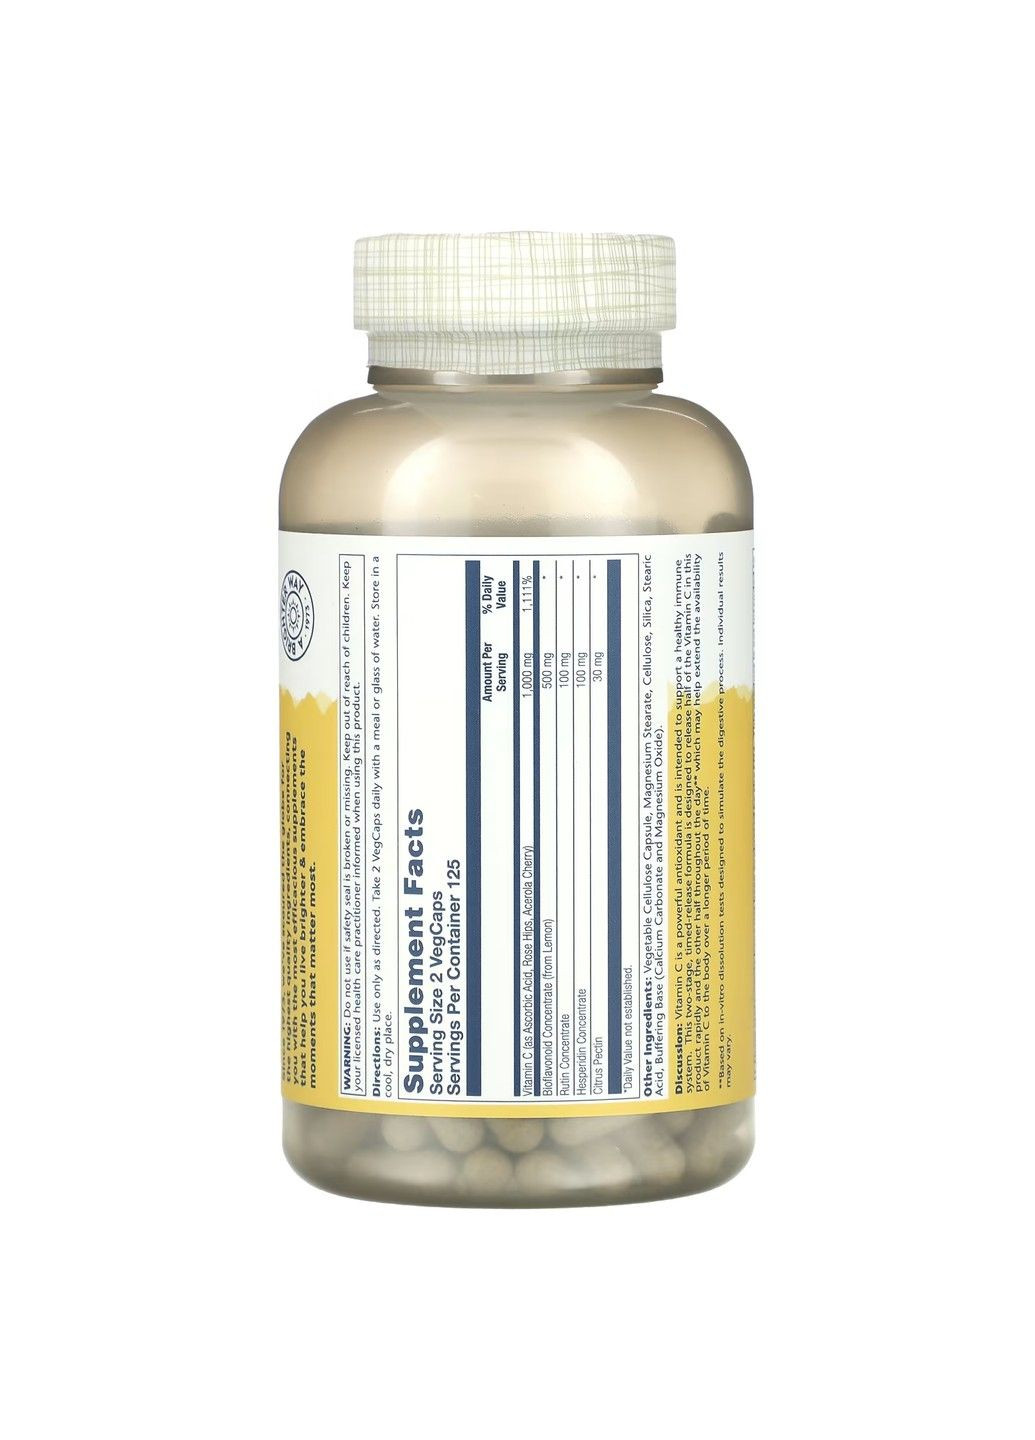 Буферизований Вітамін C Super Bio Vitamin C 1000мг - 250 вег.капсул Solaray (293944932)